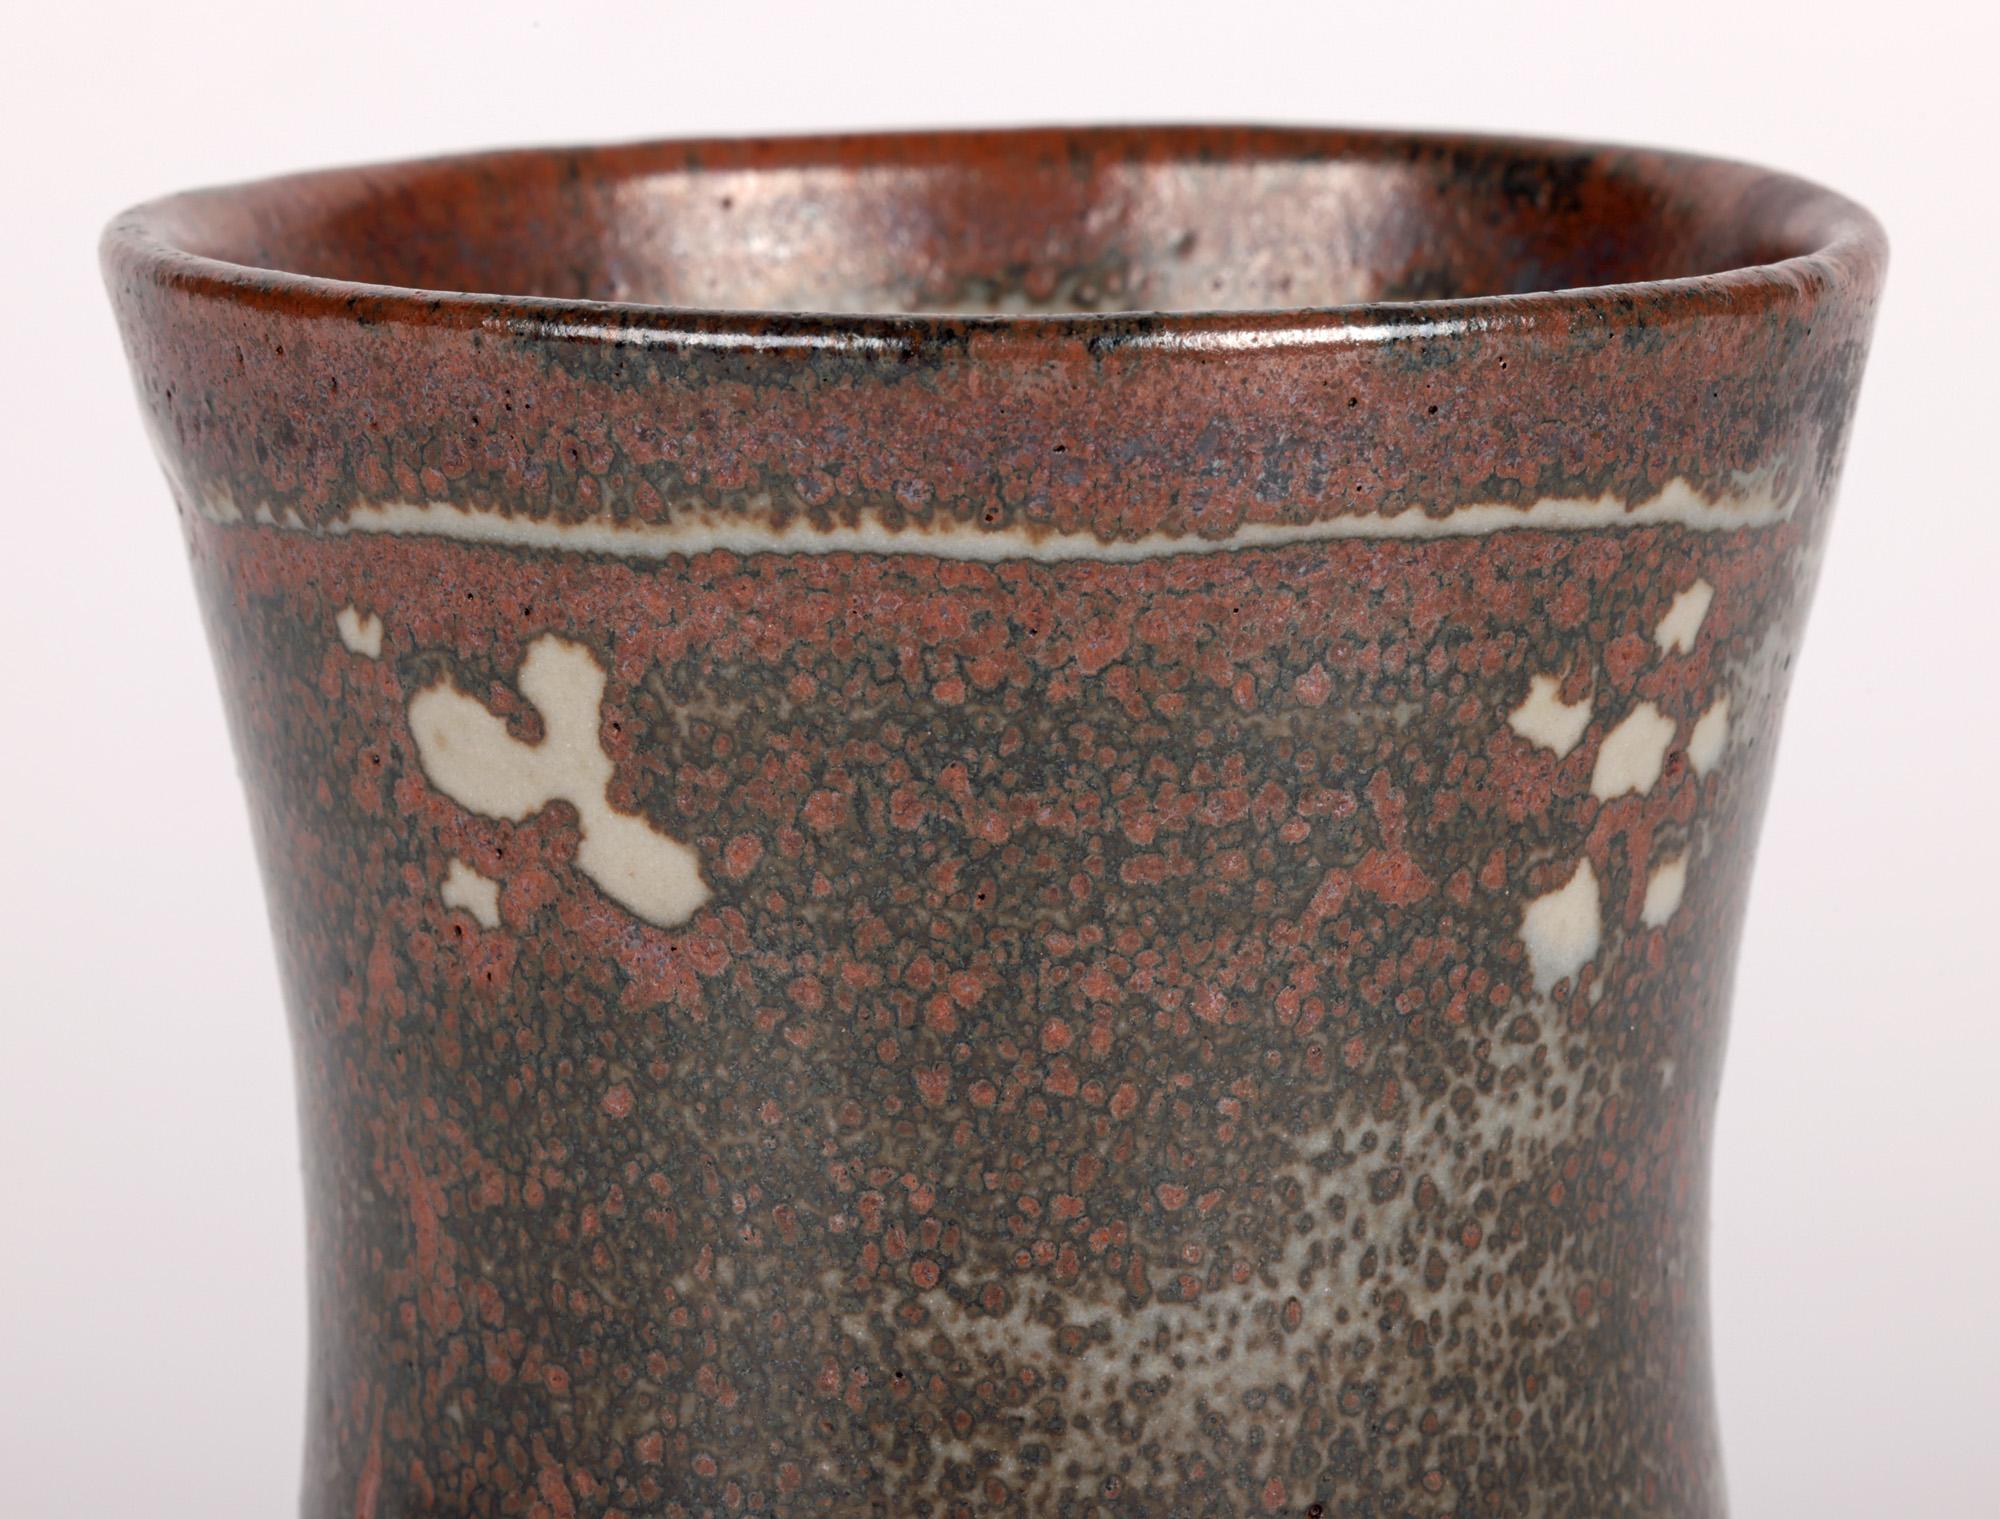 Eine sehr stilvolle Lowerdown Pottery Steingut Studio Keramik Vase mit stilisierten Blütenköpfen von renommierten Töpfer David Leach (British, 1911-2005) aus der Zeit um 1970. Die handgedrehte Vase steht auf einem schmalen, runden, unglasierten Fuß